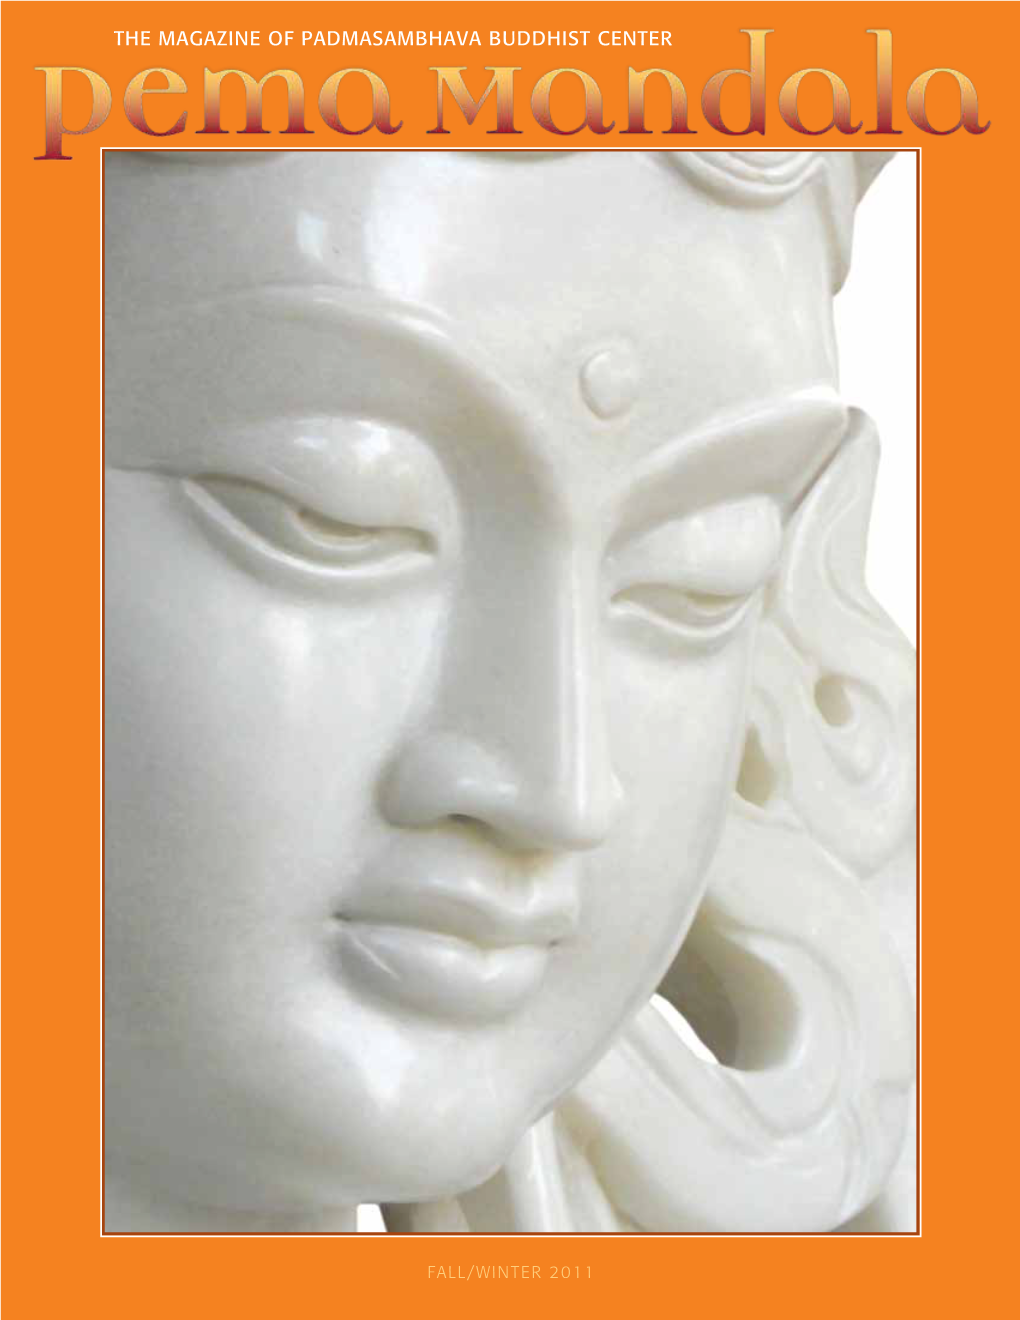 The Magazine of Padmasambhava Buddhist Center